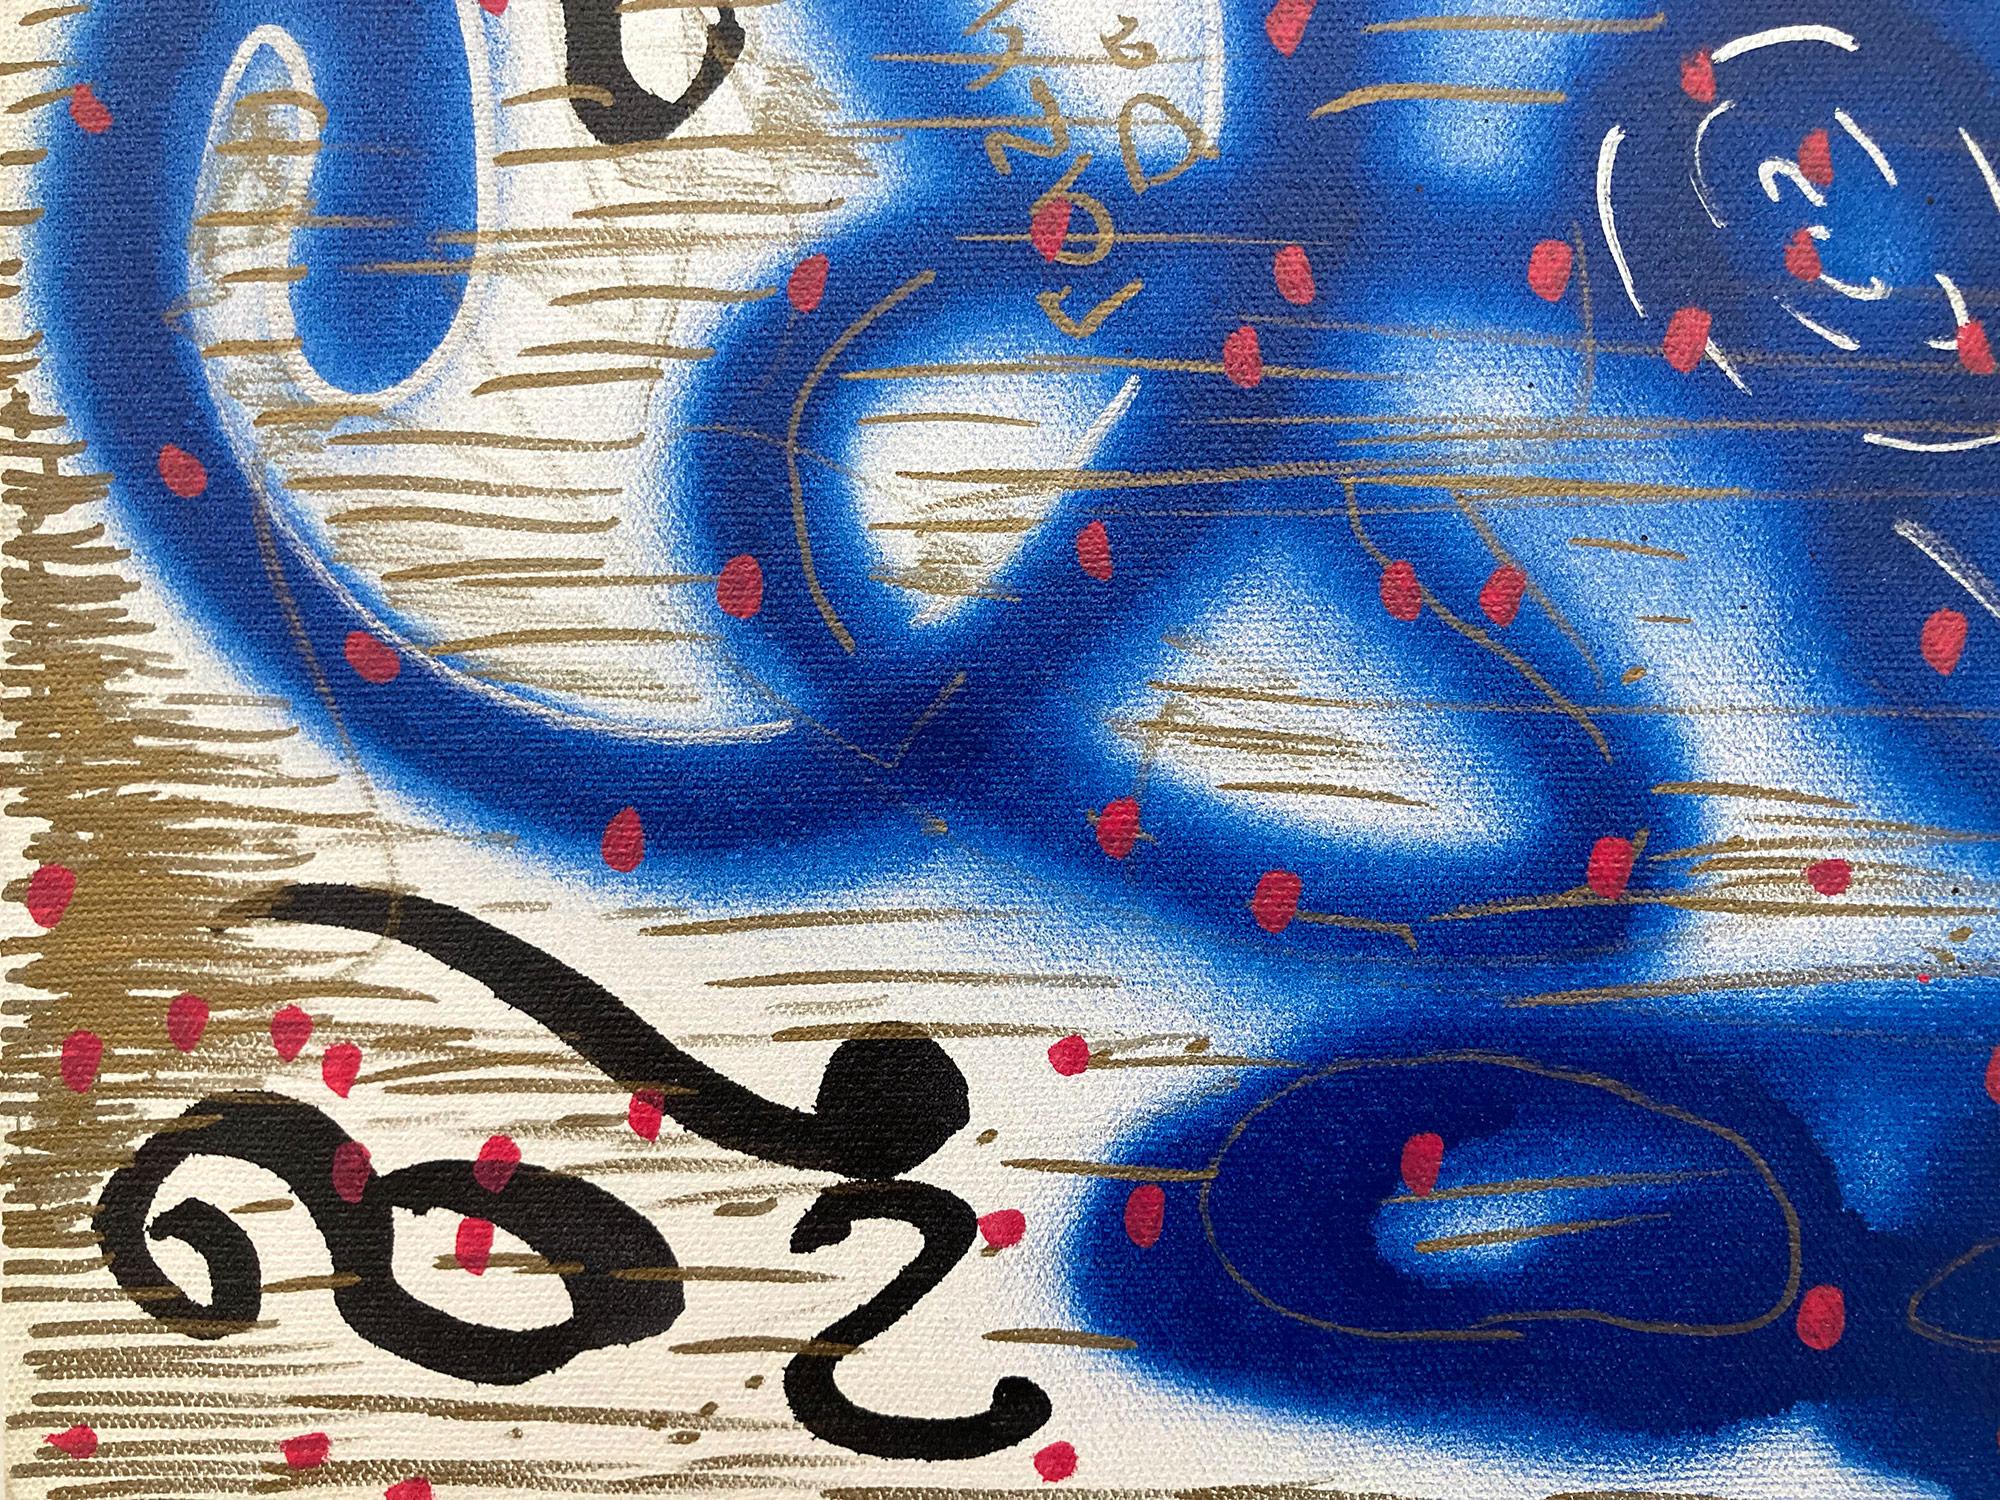 « Music Box » décorée de graffitis sur toile, peinture acrylique et encre sur toile - Bleu Abstract Painting par LA II (Angel Ortiz)